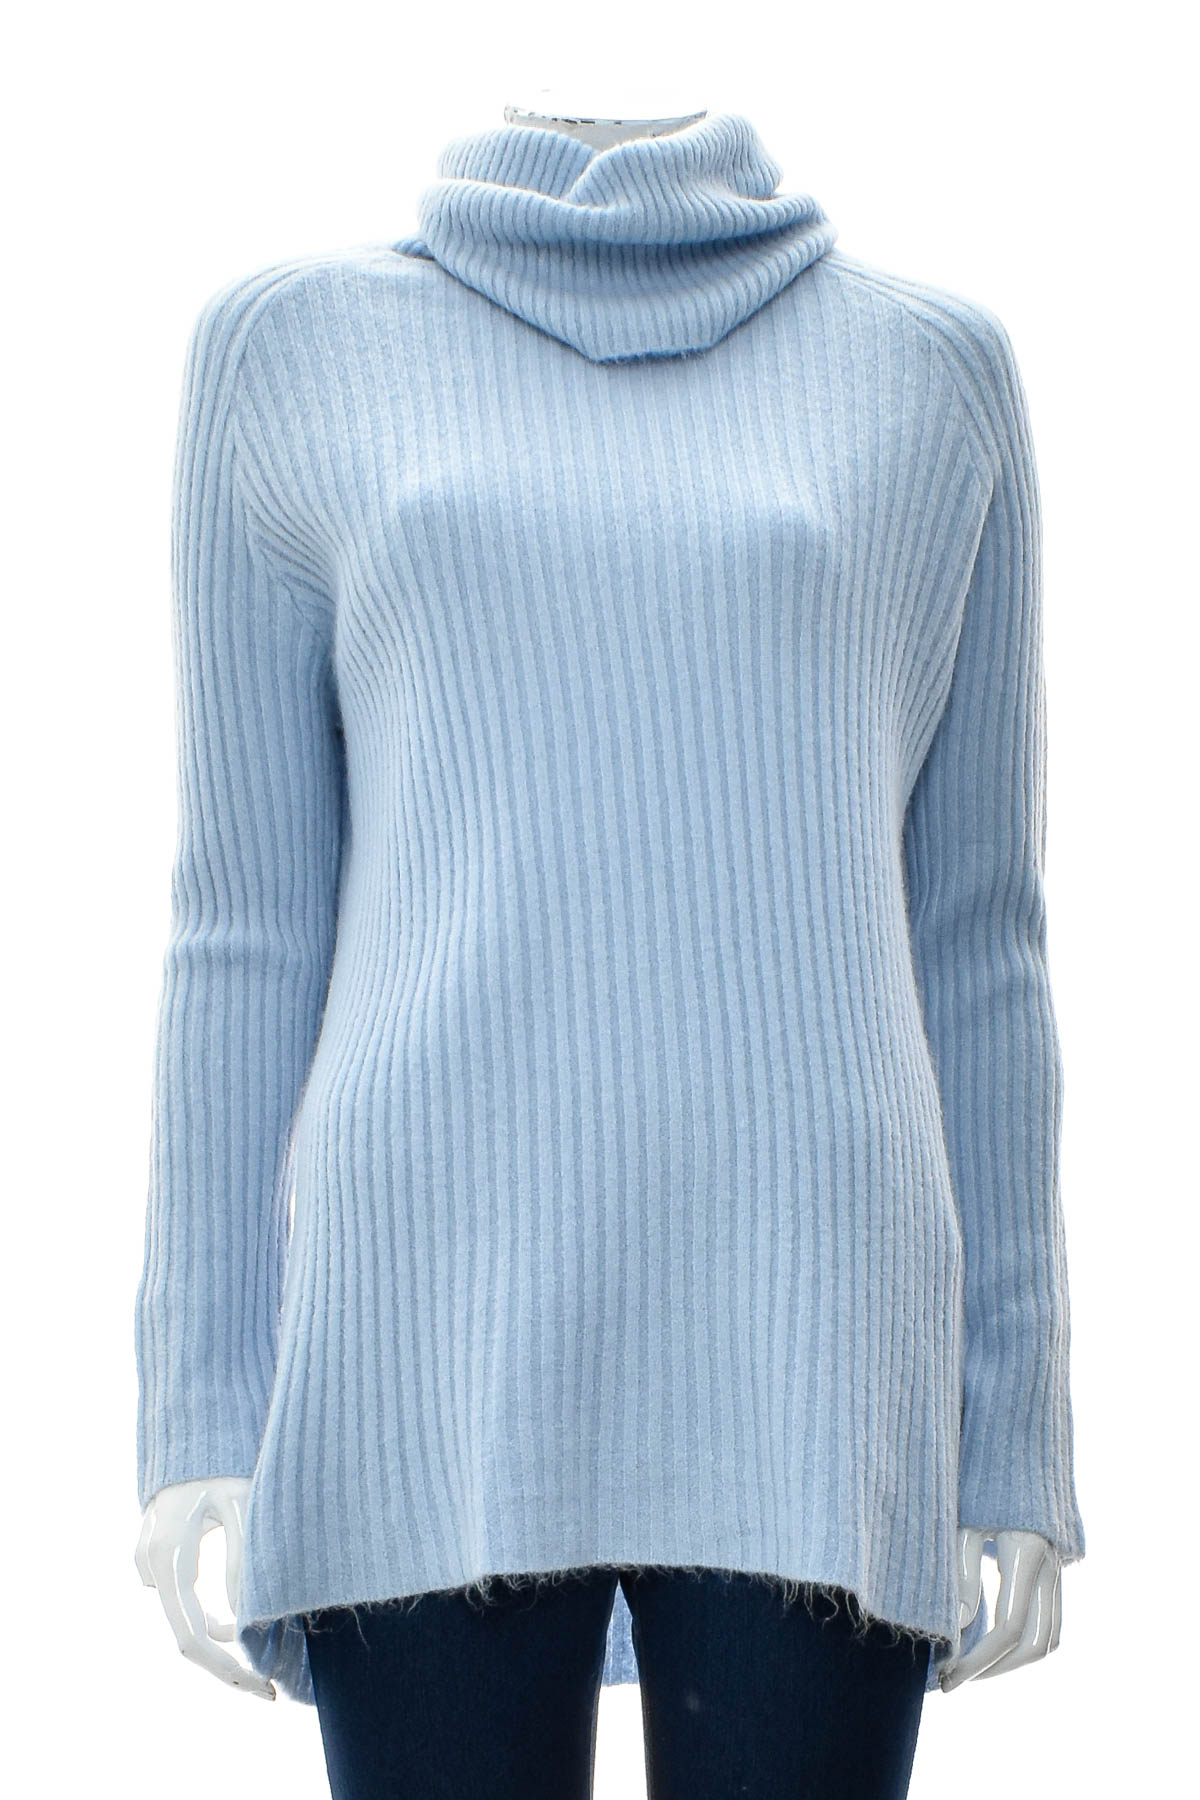 Women's sweater - Ebelieve - 0